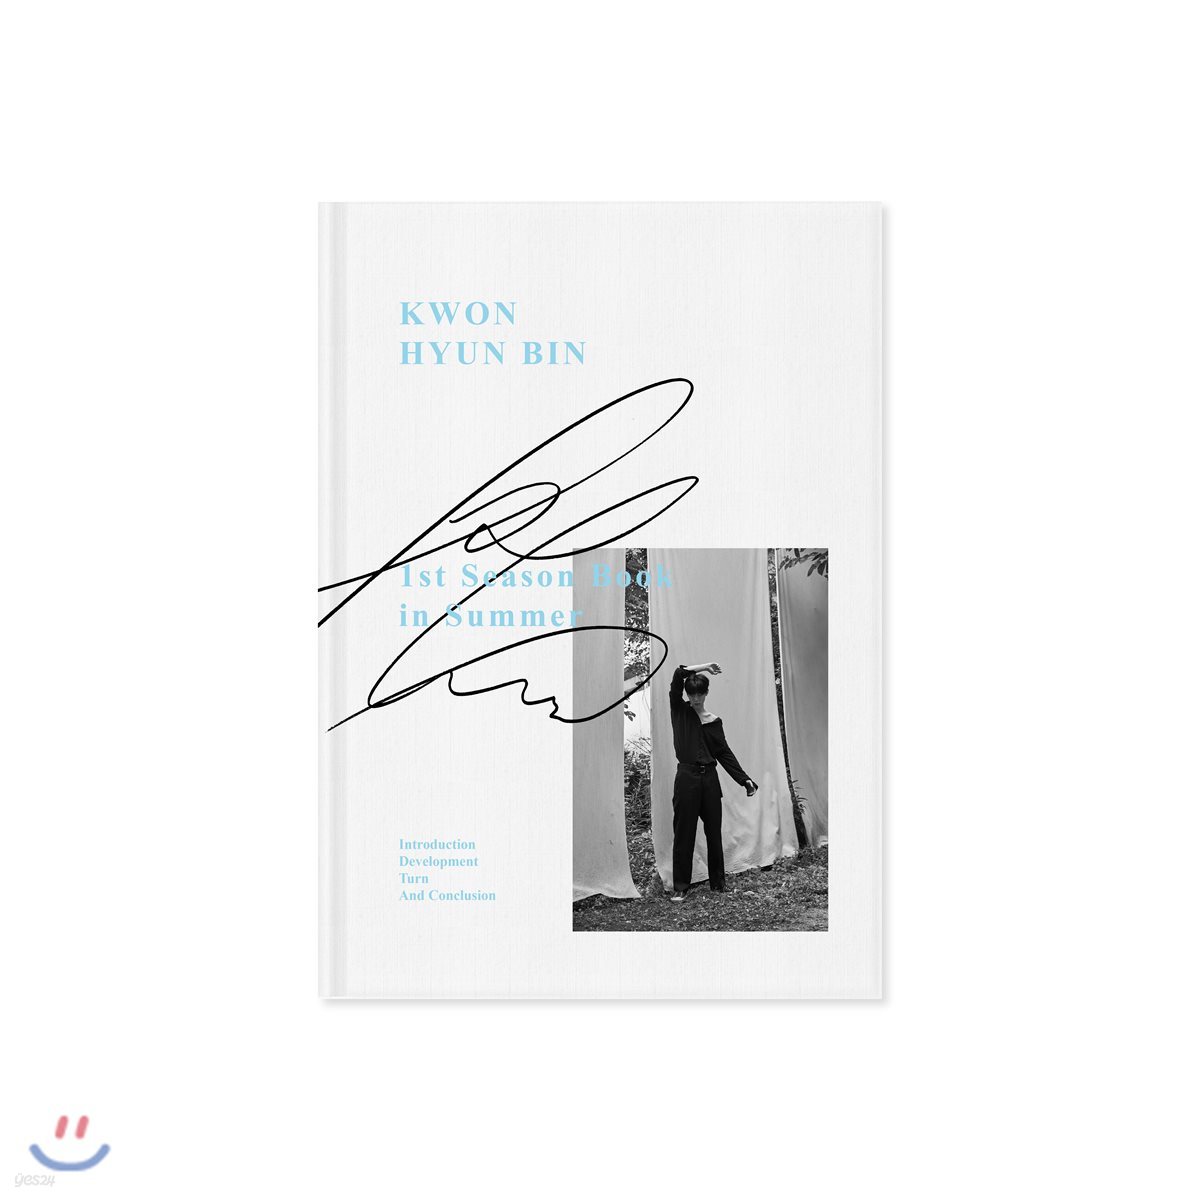 권현빈 - 권현빈 화보집 (시즌 북) Kwon Hyun Bin, 1st Season Book In Summer